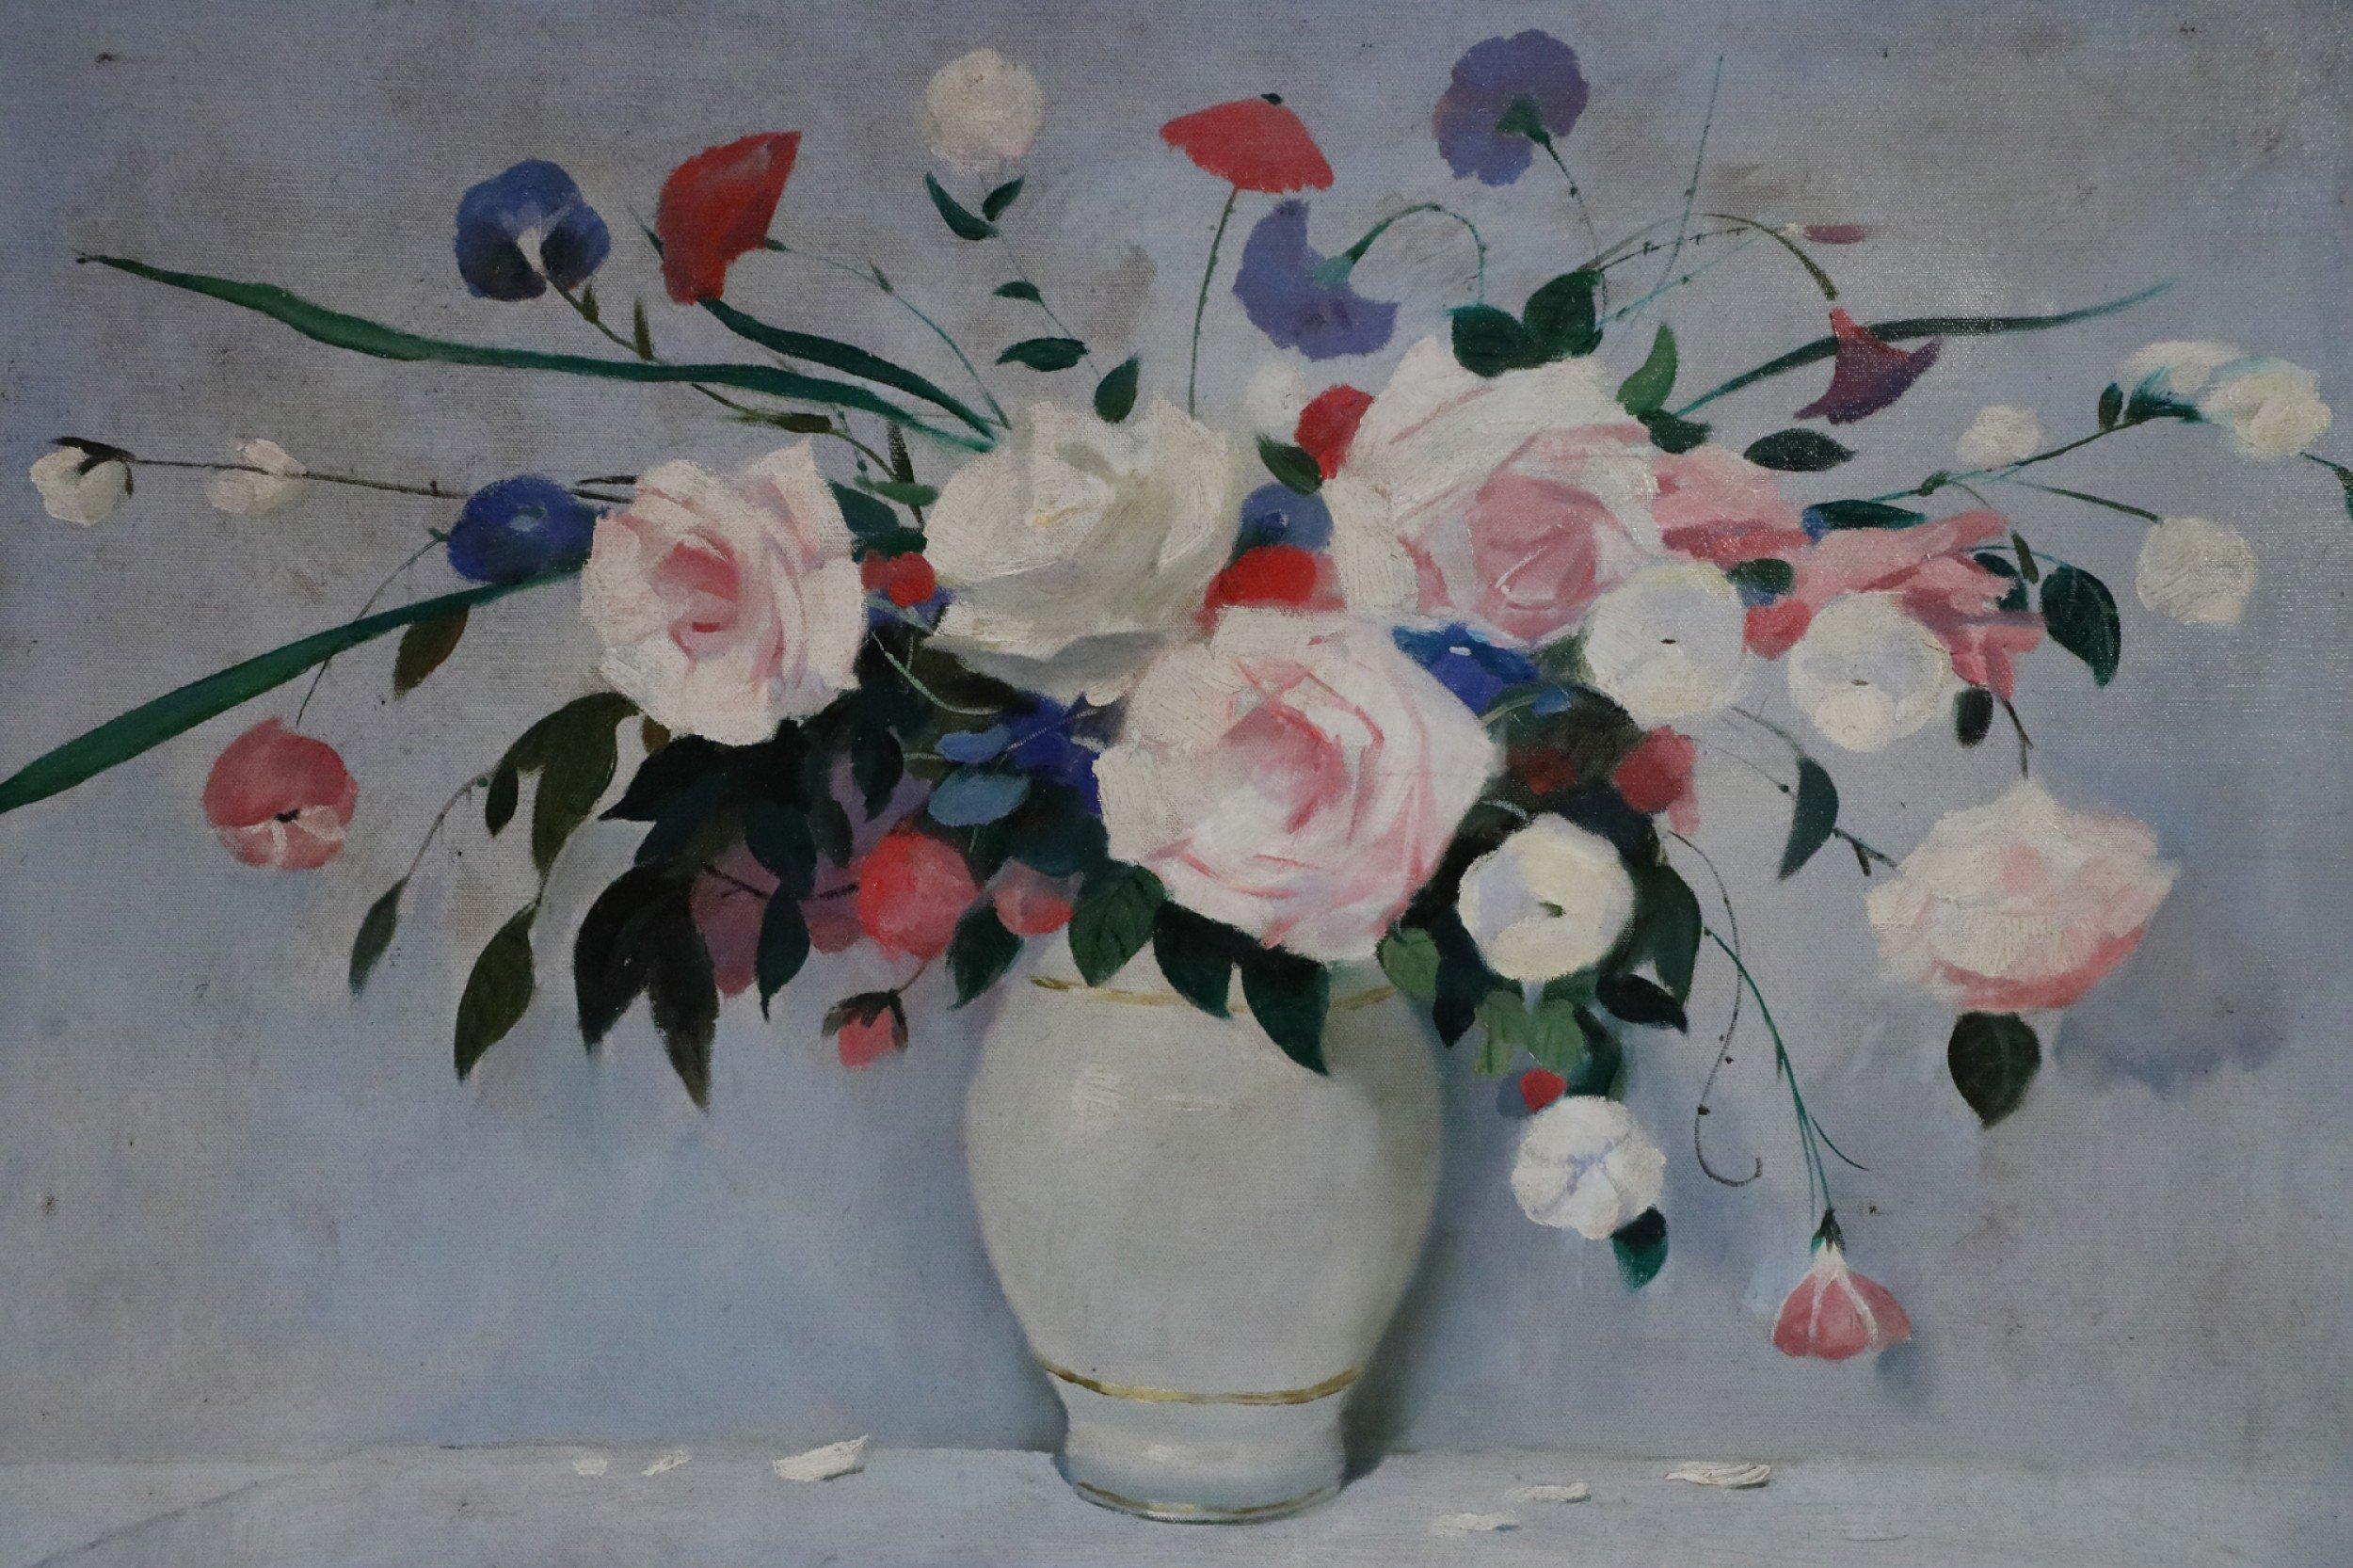 Vintage (20. Jahrhundert) ungerahmtes Ölgemälde auf Leinwand mit einer weiß-goldenen Vase, die ein üppiges Arrangement aus weißen, rosa, violetten und roten Blumen vor einem blassblauen Hintergrund hält, wobei der Vordergrund und das Regal mit